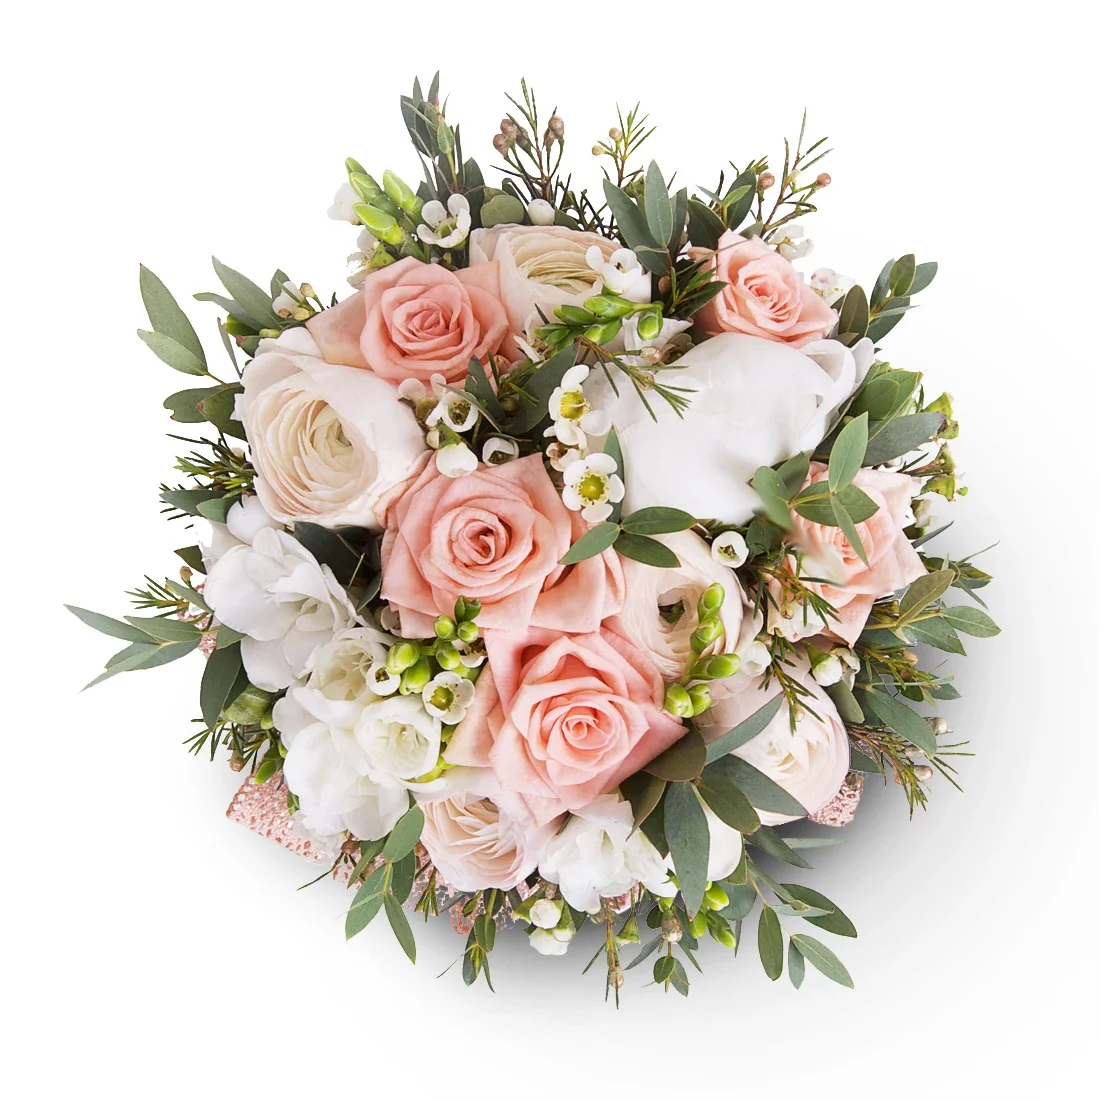 Toulouse flowers  -  Pink & White Florist Surprise Bouquet Flower Bouquet/Arrangement